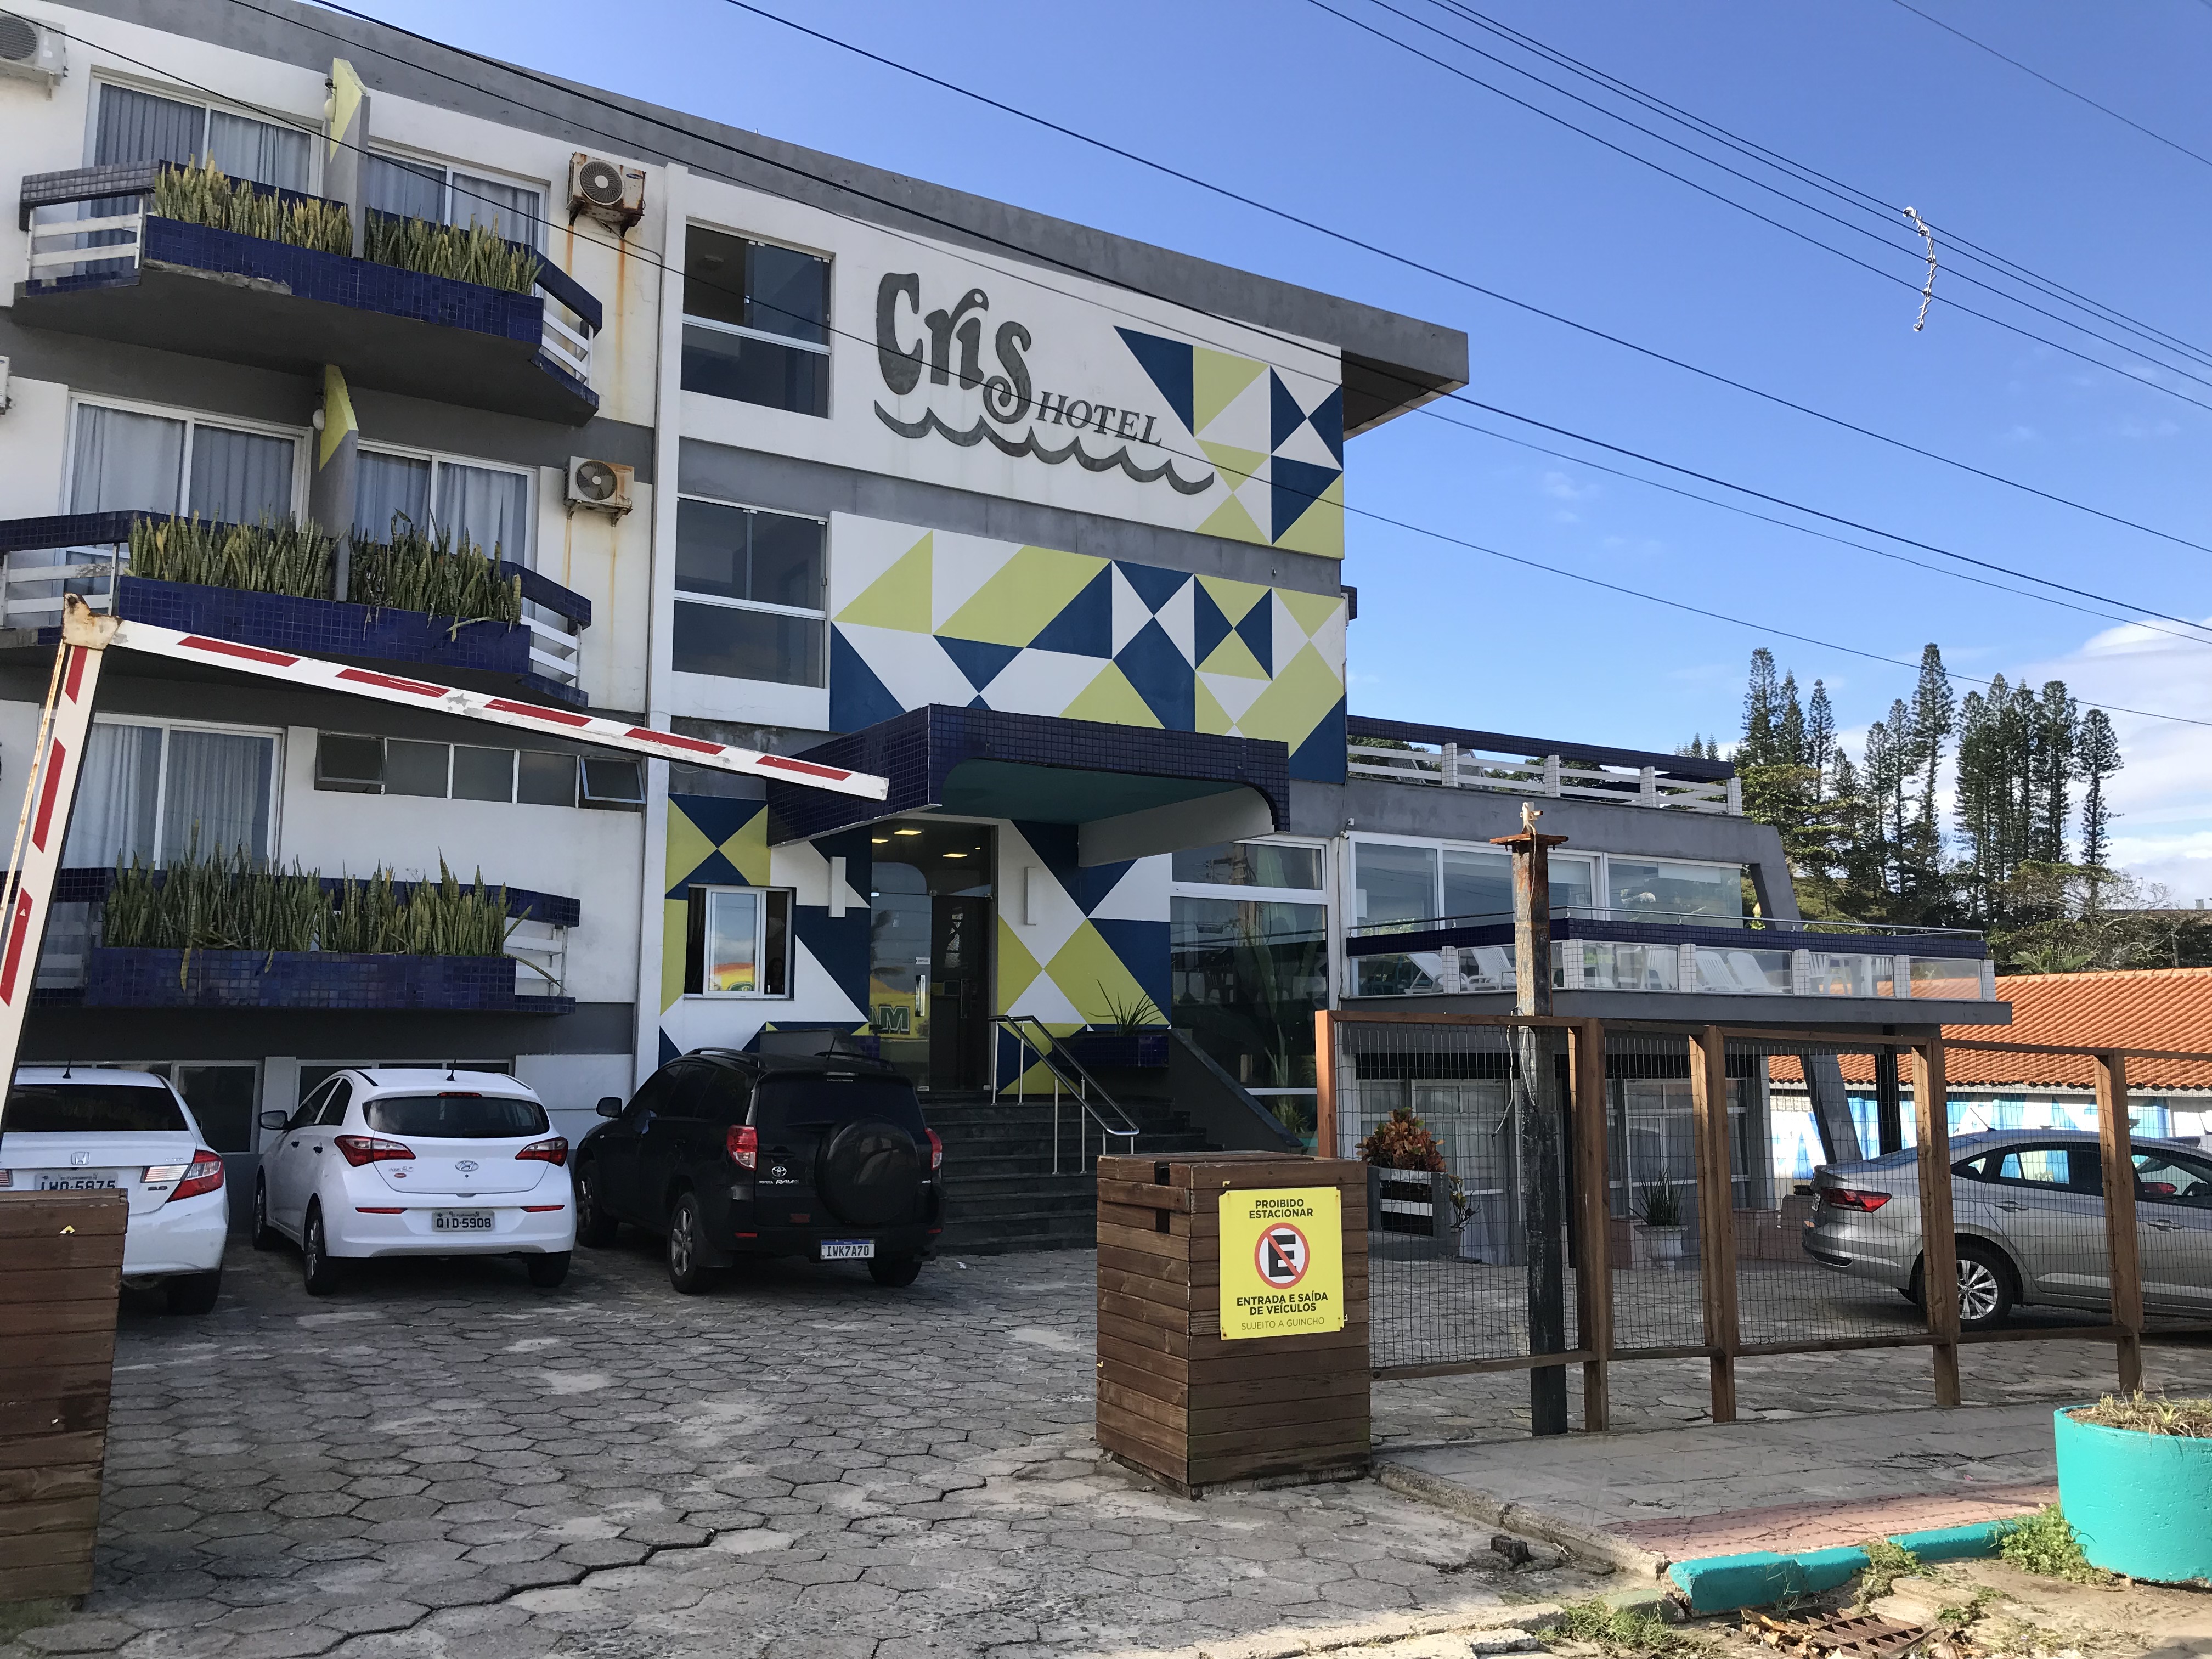 Cris Hotel: ótima opção de hospedagem na beira mar da praia da Joaquina, em Floripa!